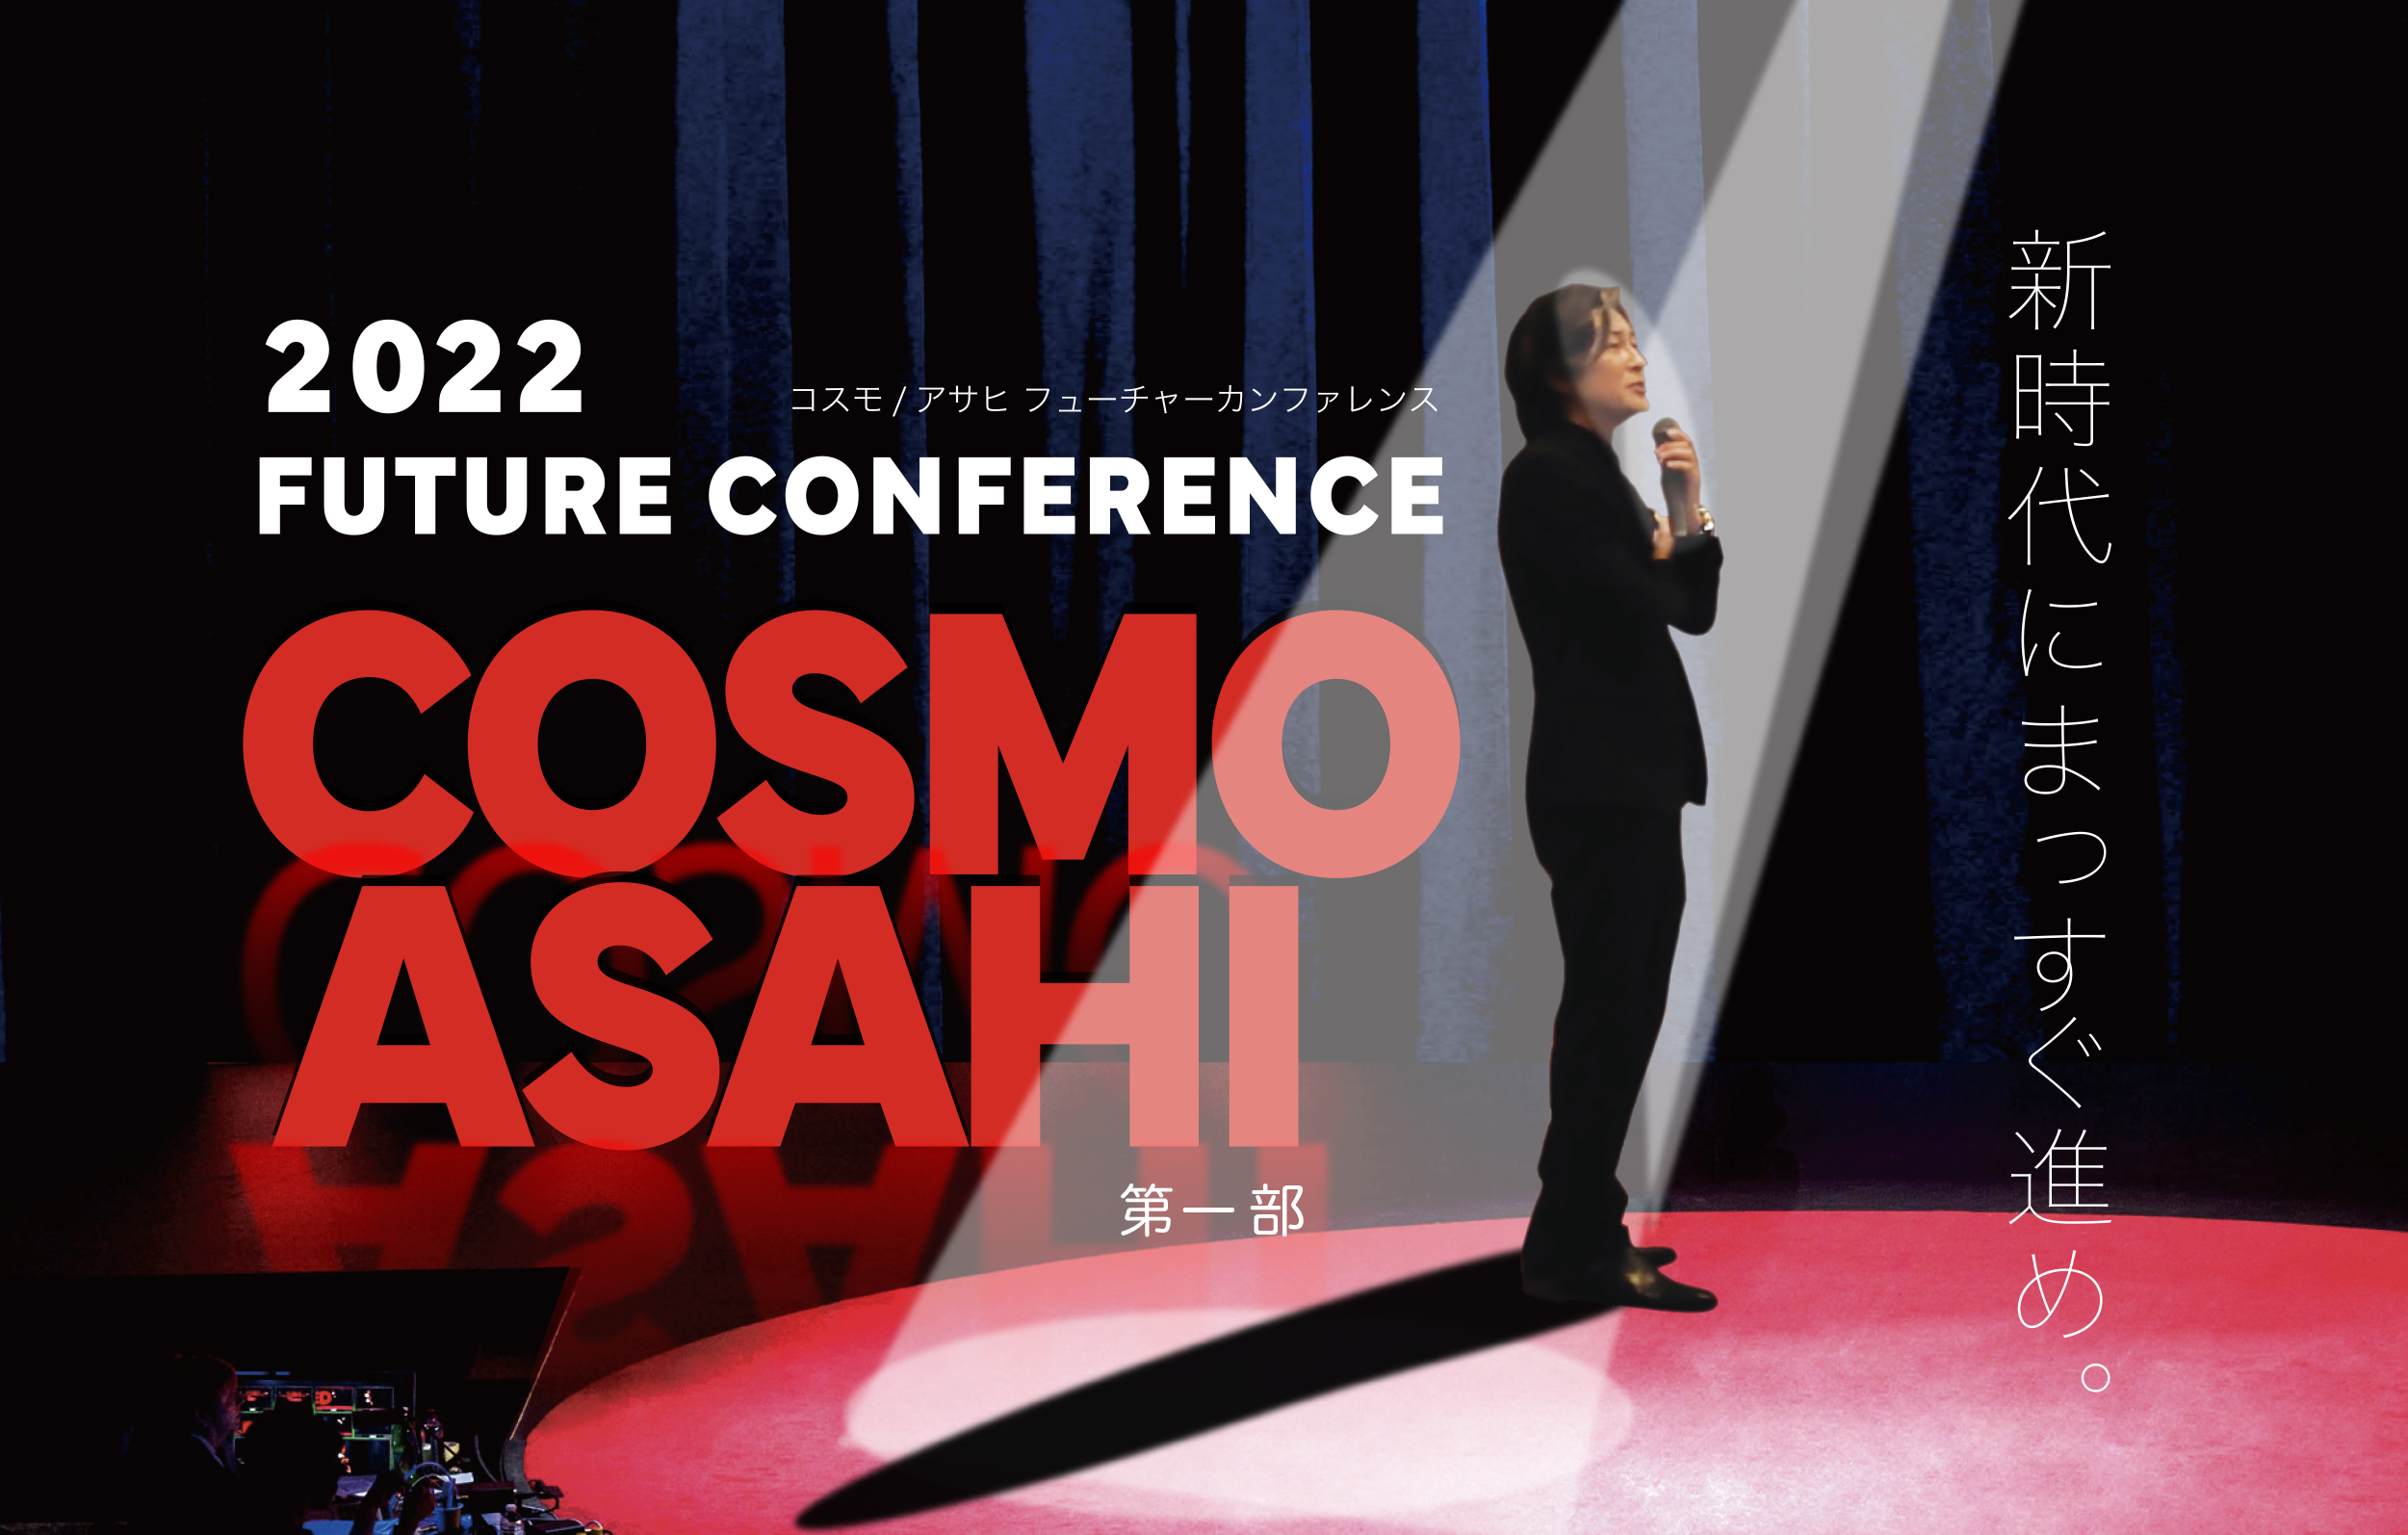 2022COSMO /ASAHI FUTURE CONFERENCE 第一部